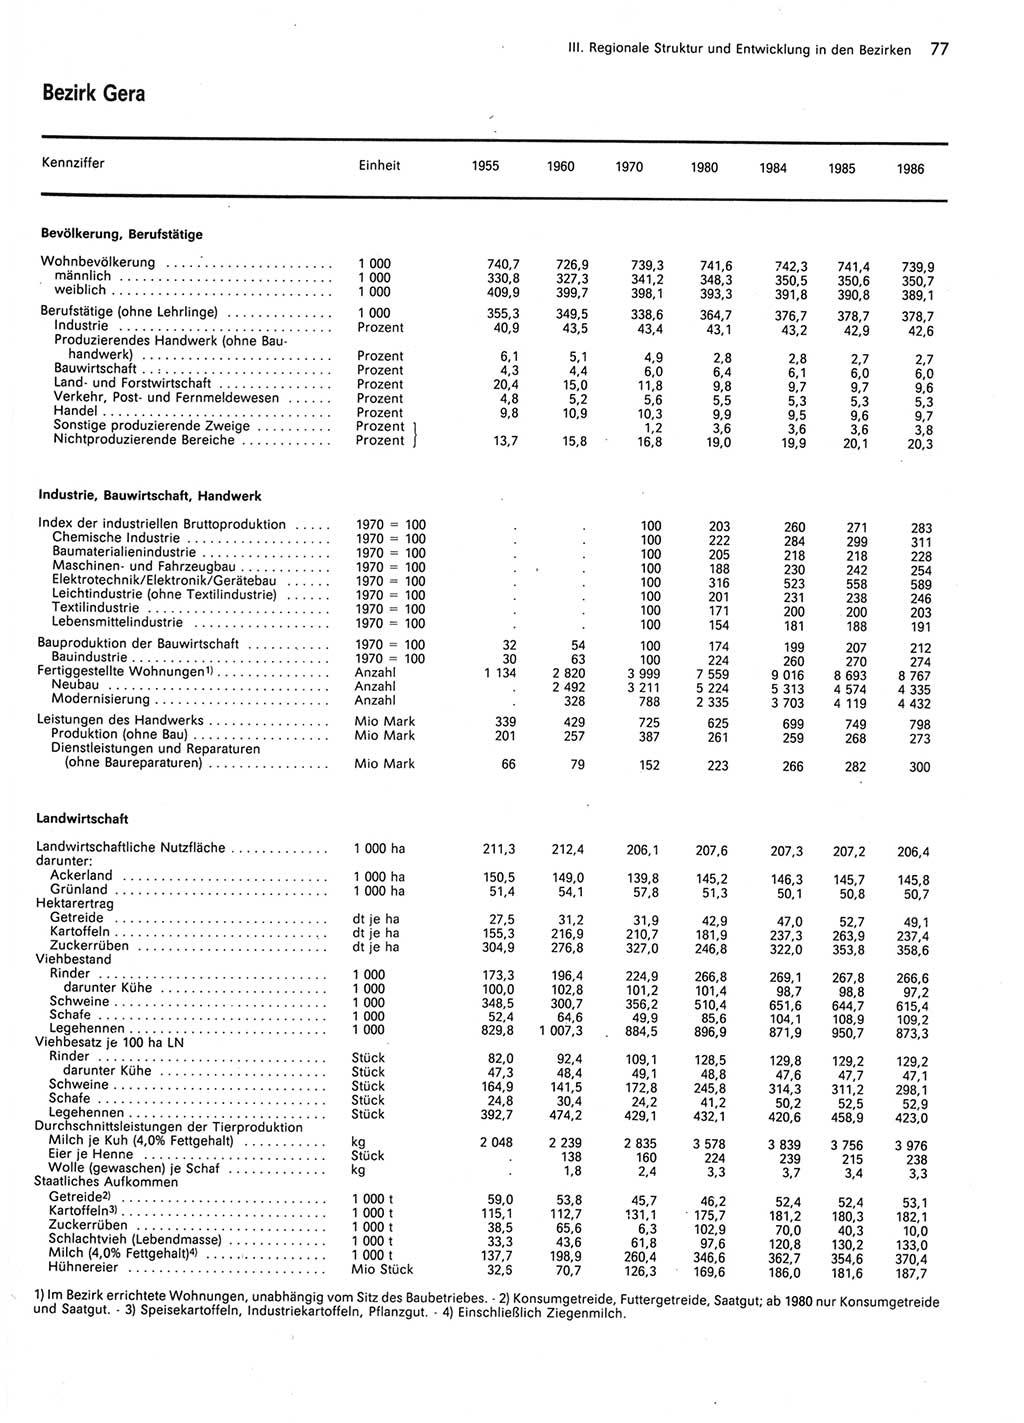 Statistisches Jahrbuch der Deutschen Demokratischen Republik (DDR) 1987, Seite 77 (Stat. Jb. DDR 1987, S. 77)